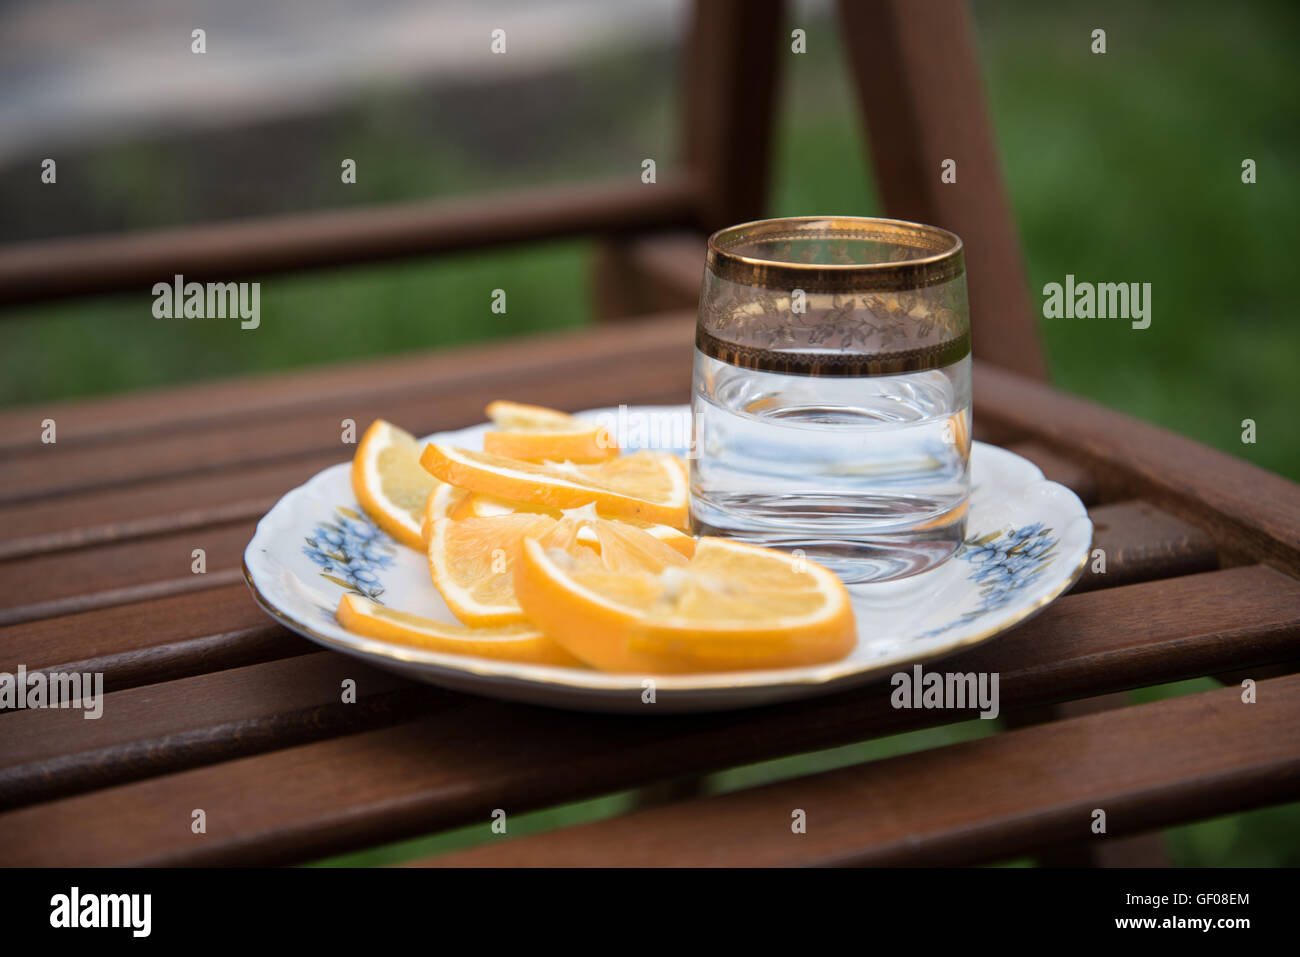 La vodka e arance in corrispondenza della piastra Foto Stock